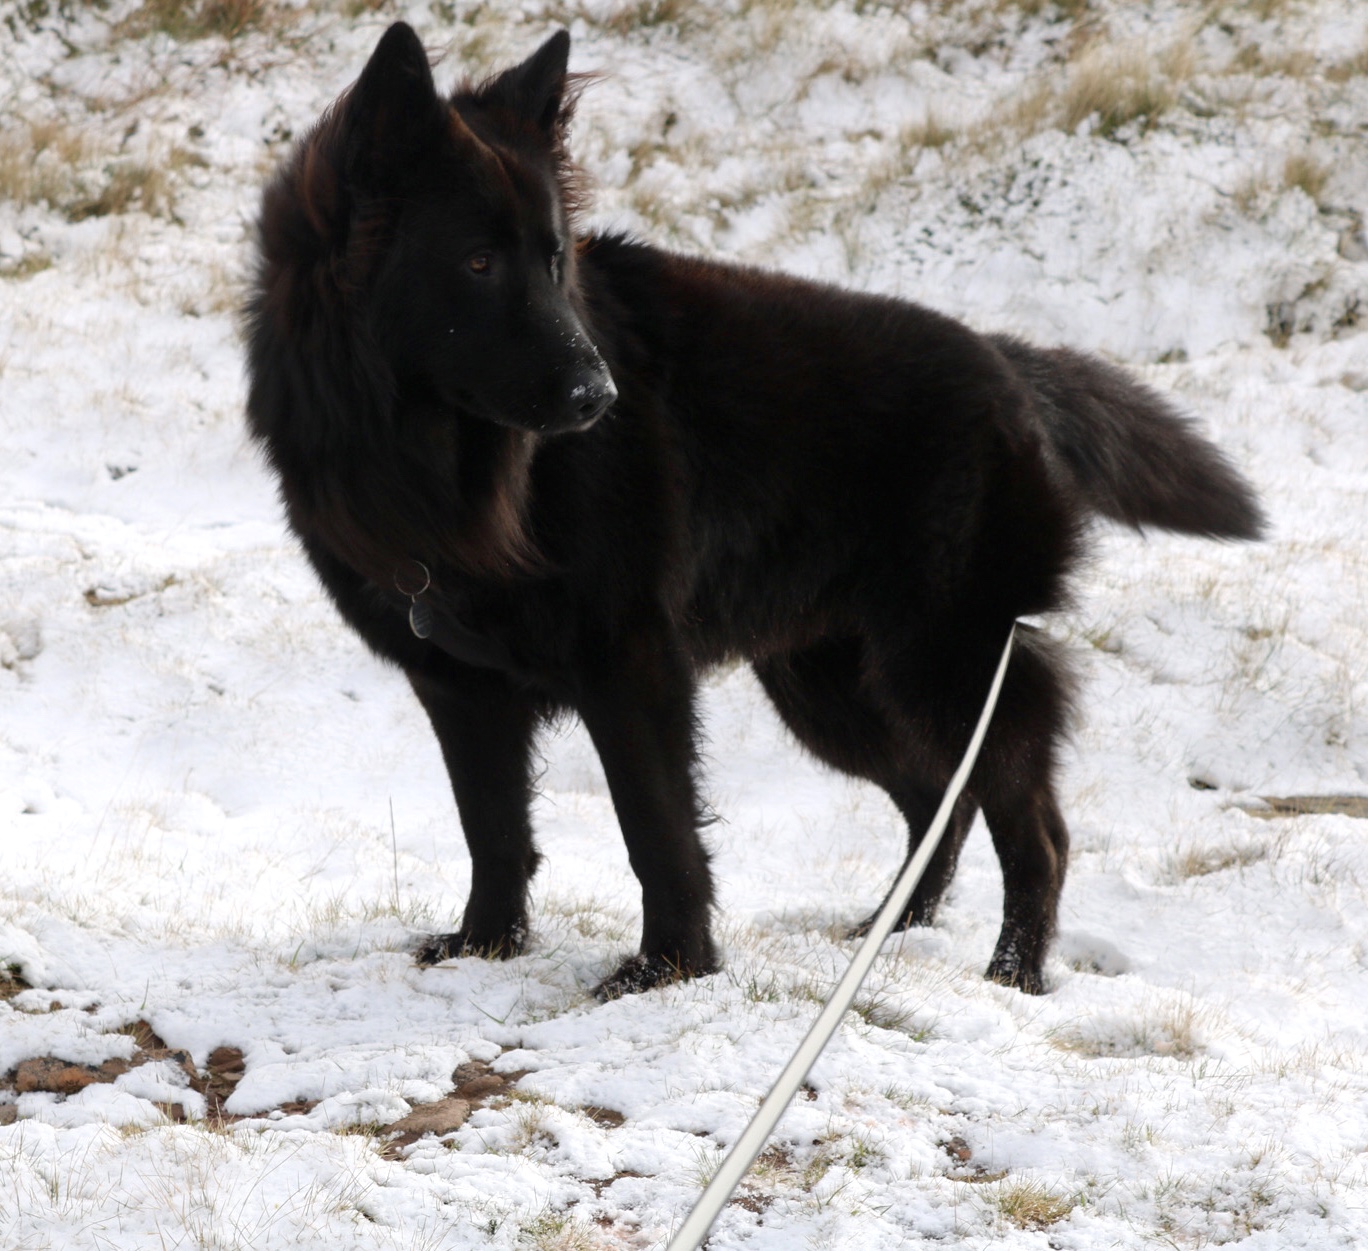 Pen Y Fan black dog in snow on mountain side